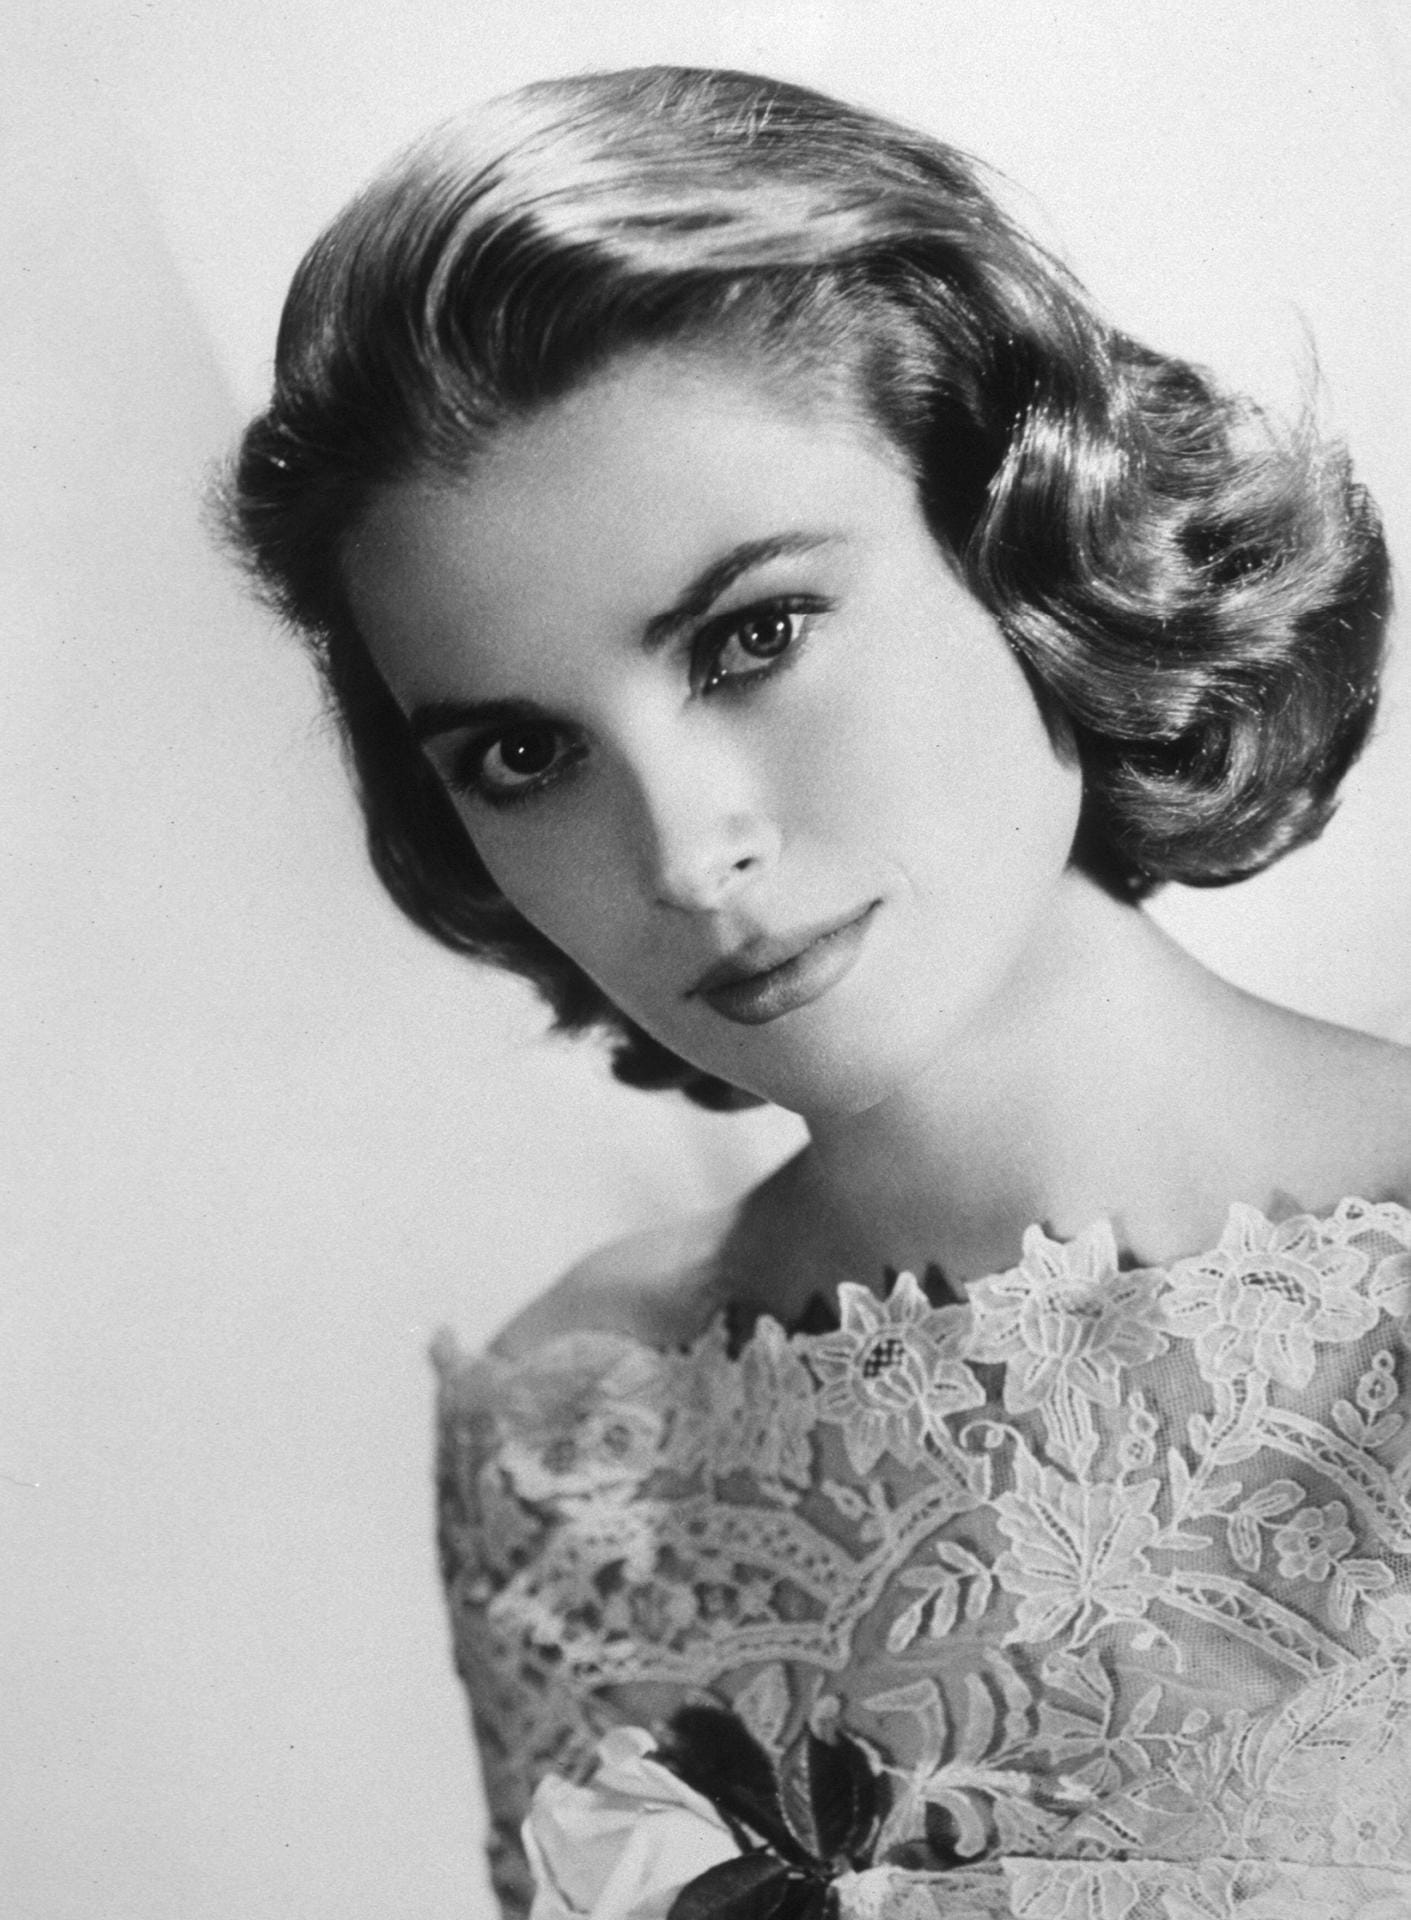 Grace Kelly (1929-1982): Grace Kelly wurde als Schauspielerin berühmt. 1956 heiratete sie den Fürsten von Monaco. Danach hieß sie im deutschsprachigen Raum Fürstin Gracia Patricia von Monaco. Im Alter von 52 Jahren starb sie an den schweren Verletzungen, die sie sich bei einem Autounfall zugezogen hatte.